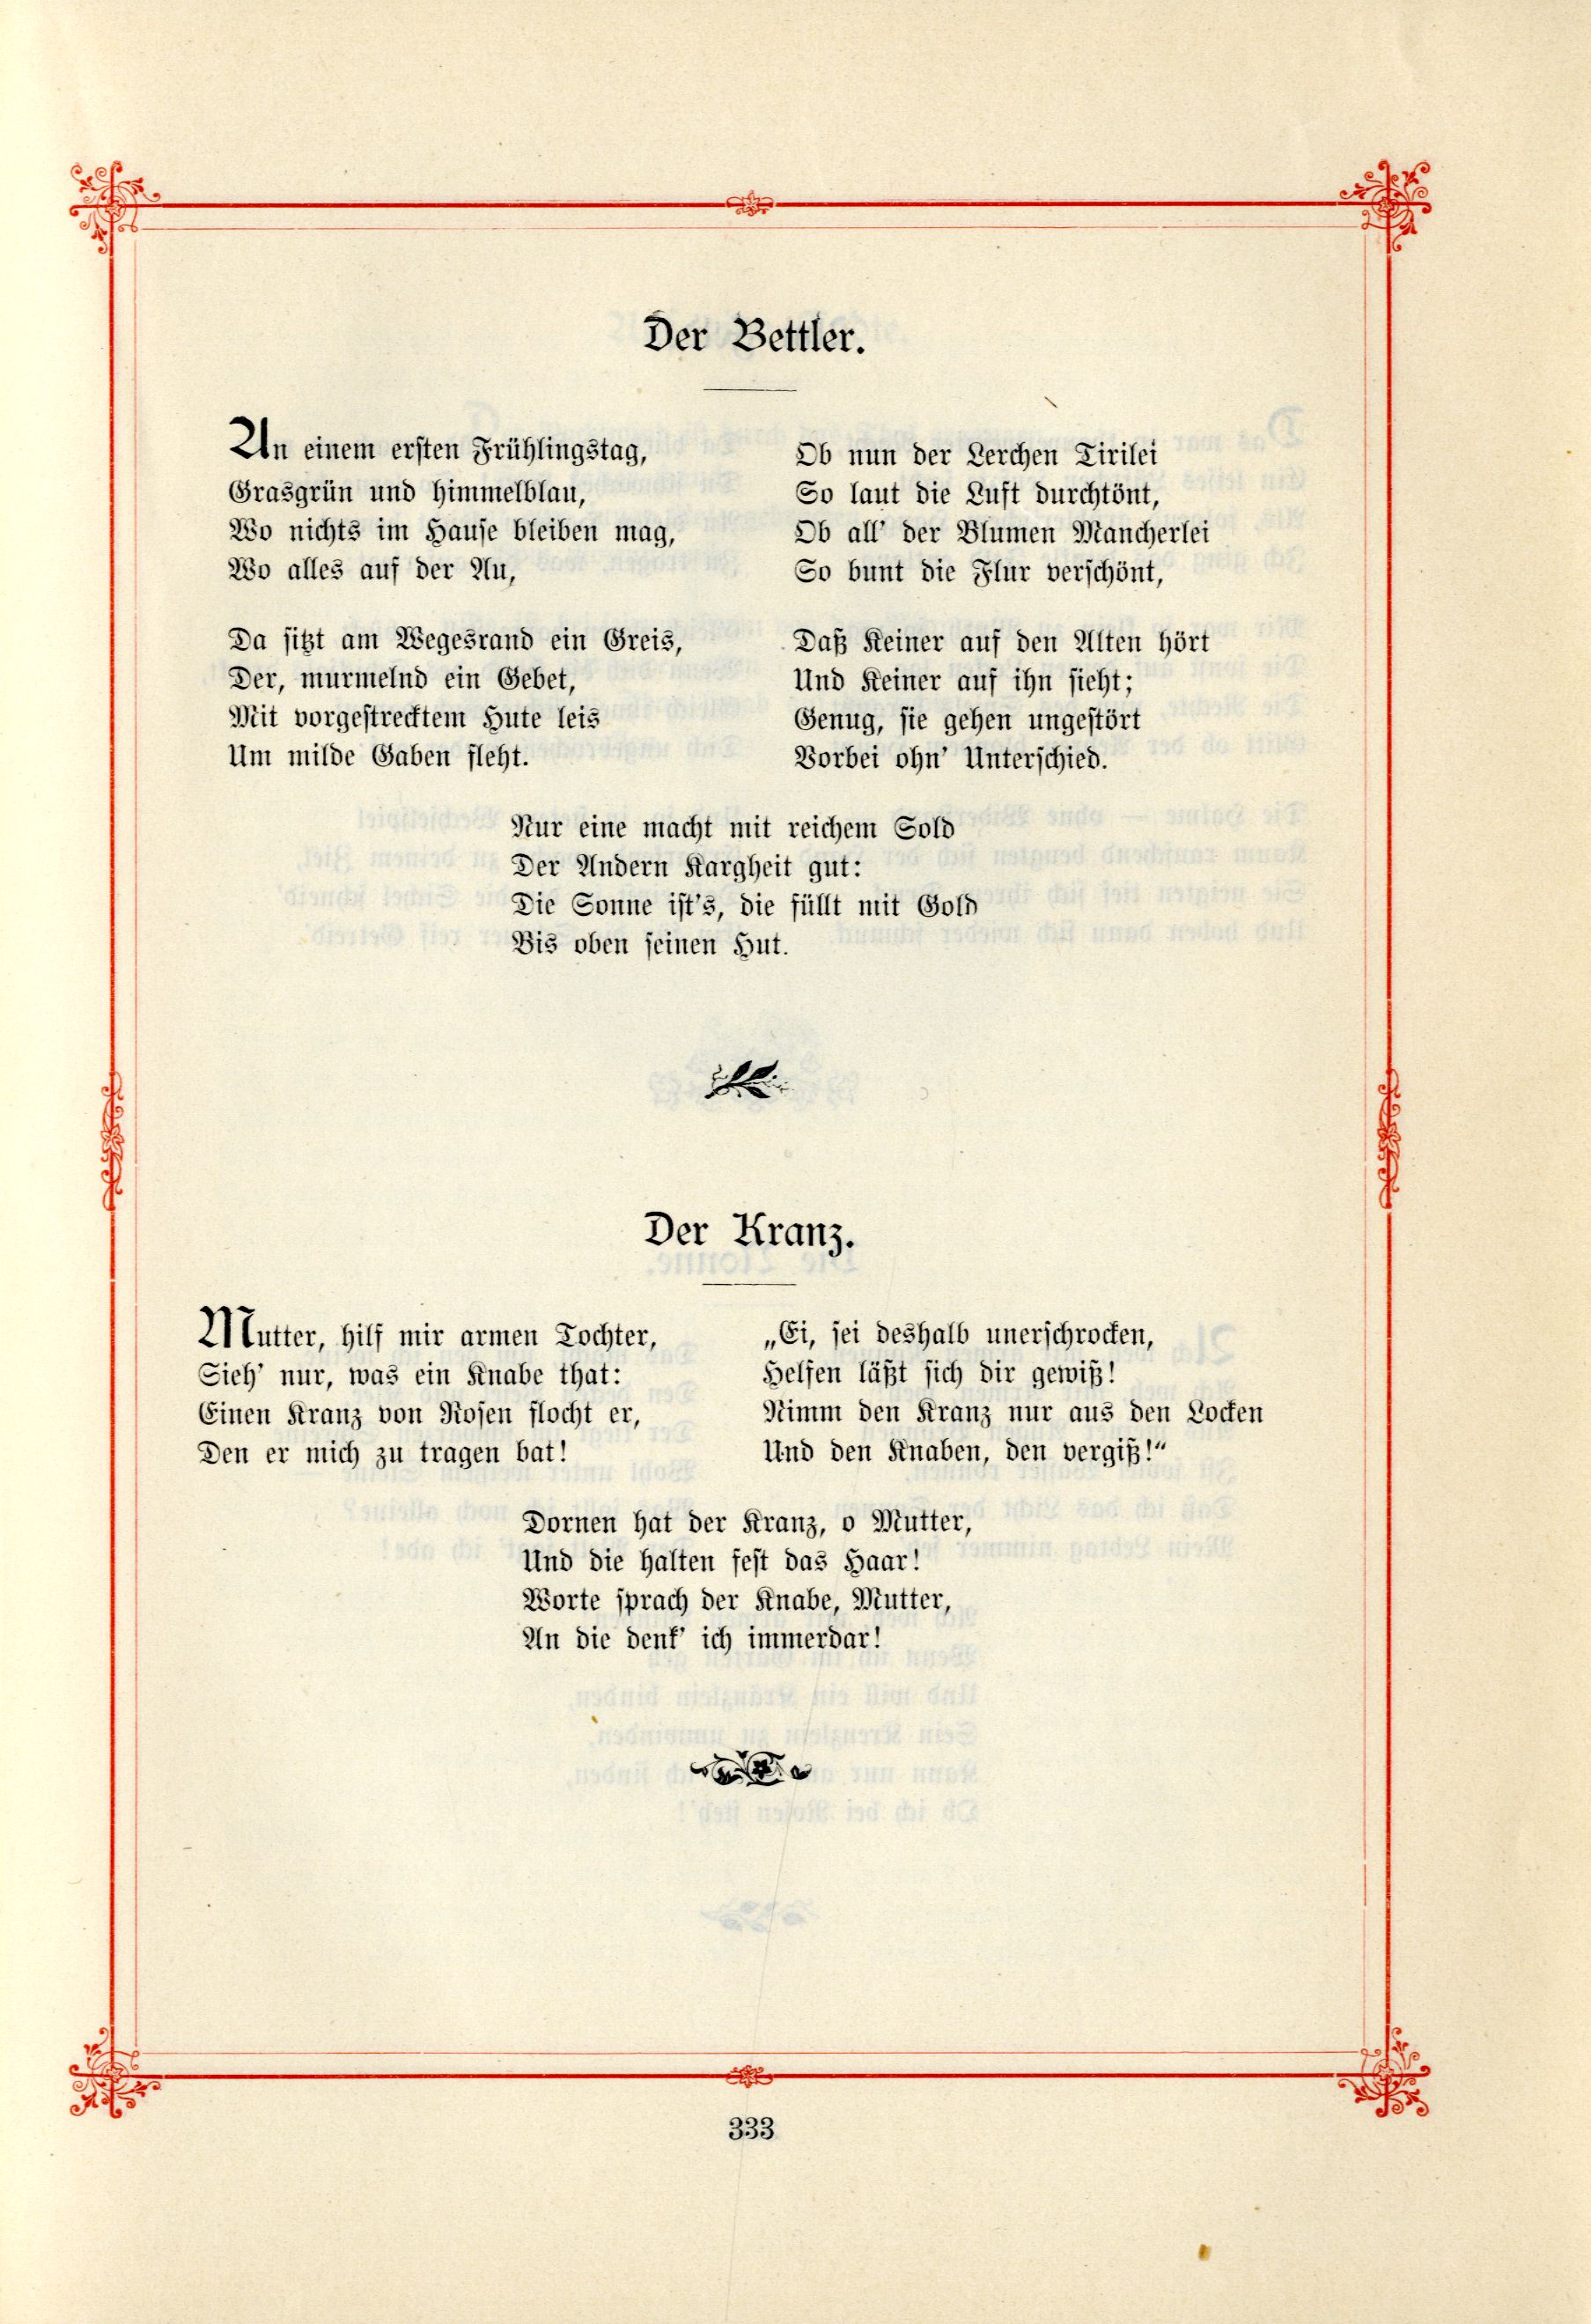 Der Kranz (1895) | 1. (333) Main body of text